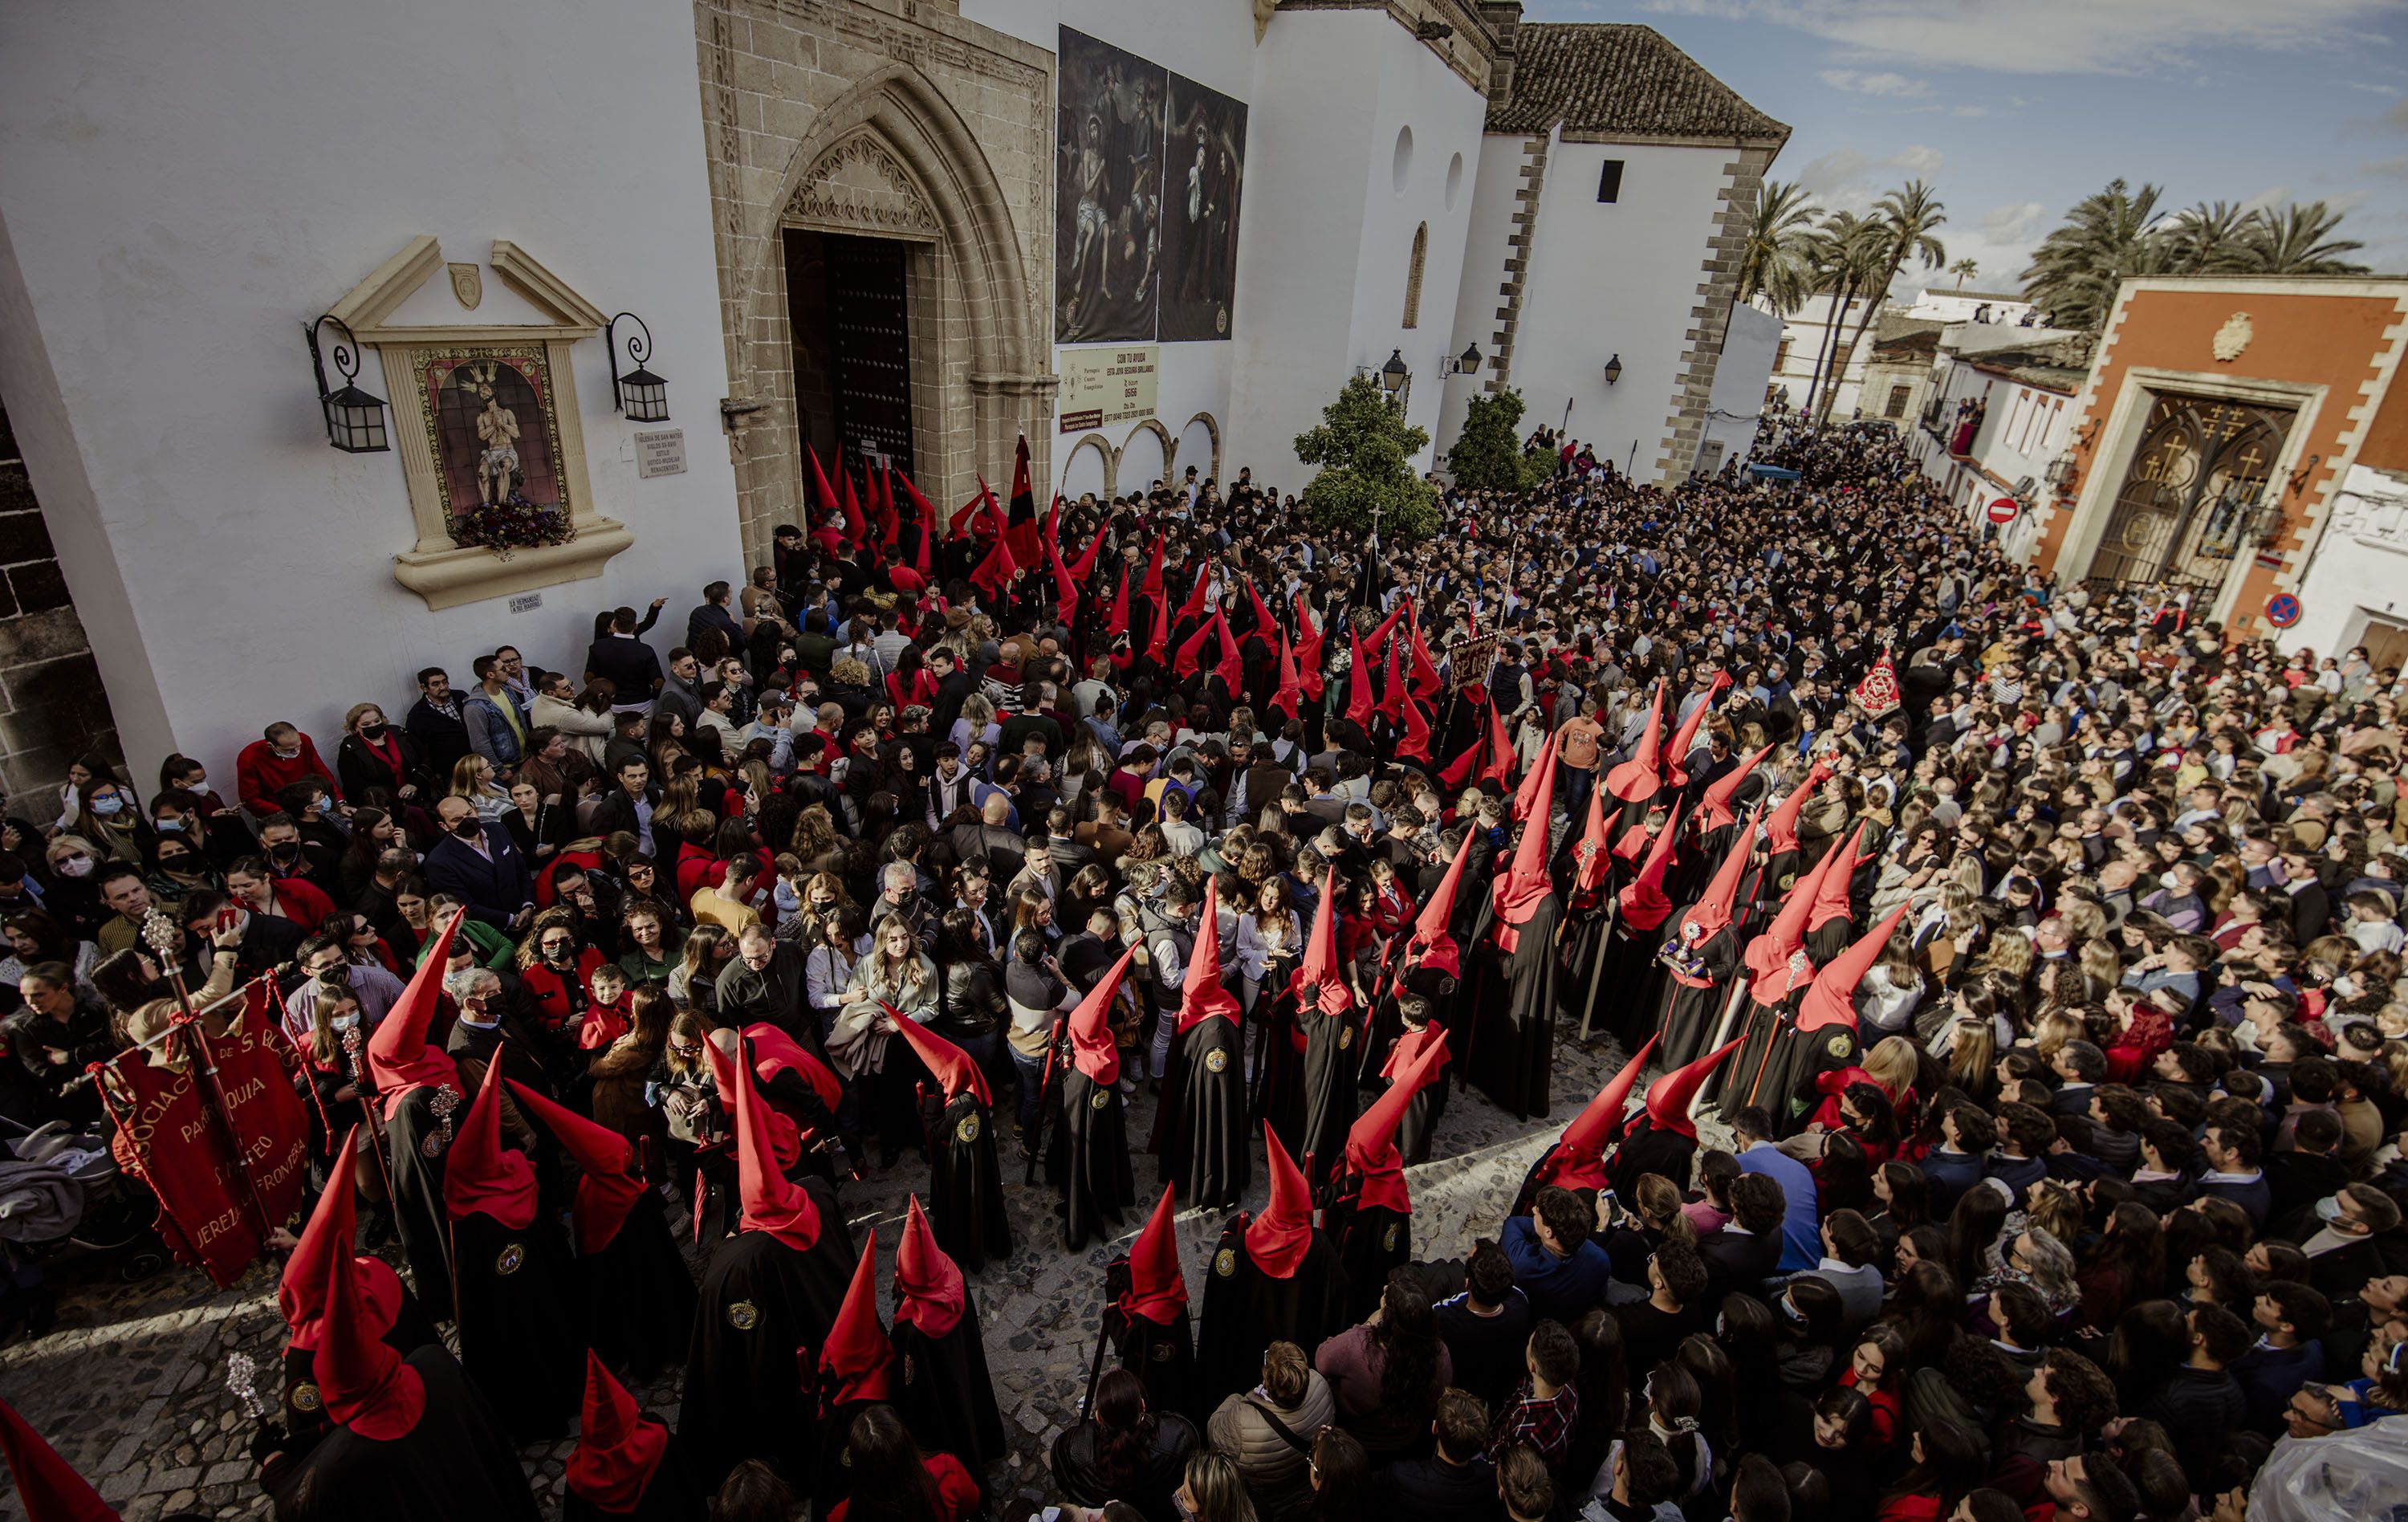 Los Judíos vuelve a ser la que más nazarenos puso en las calles de Jerez.